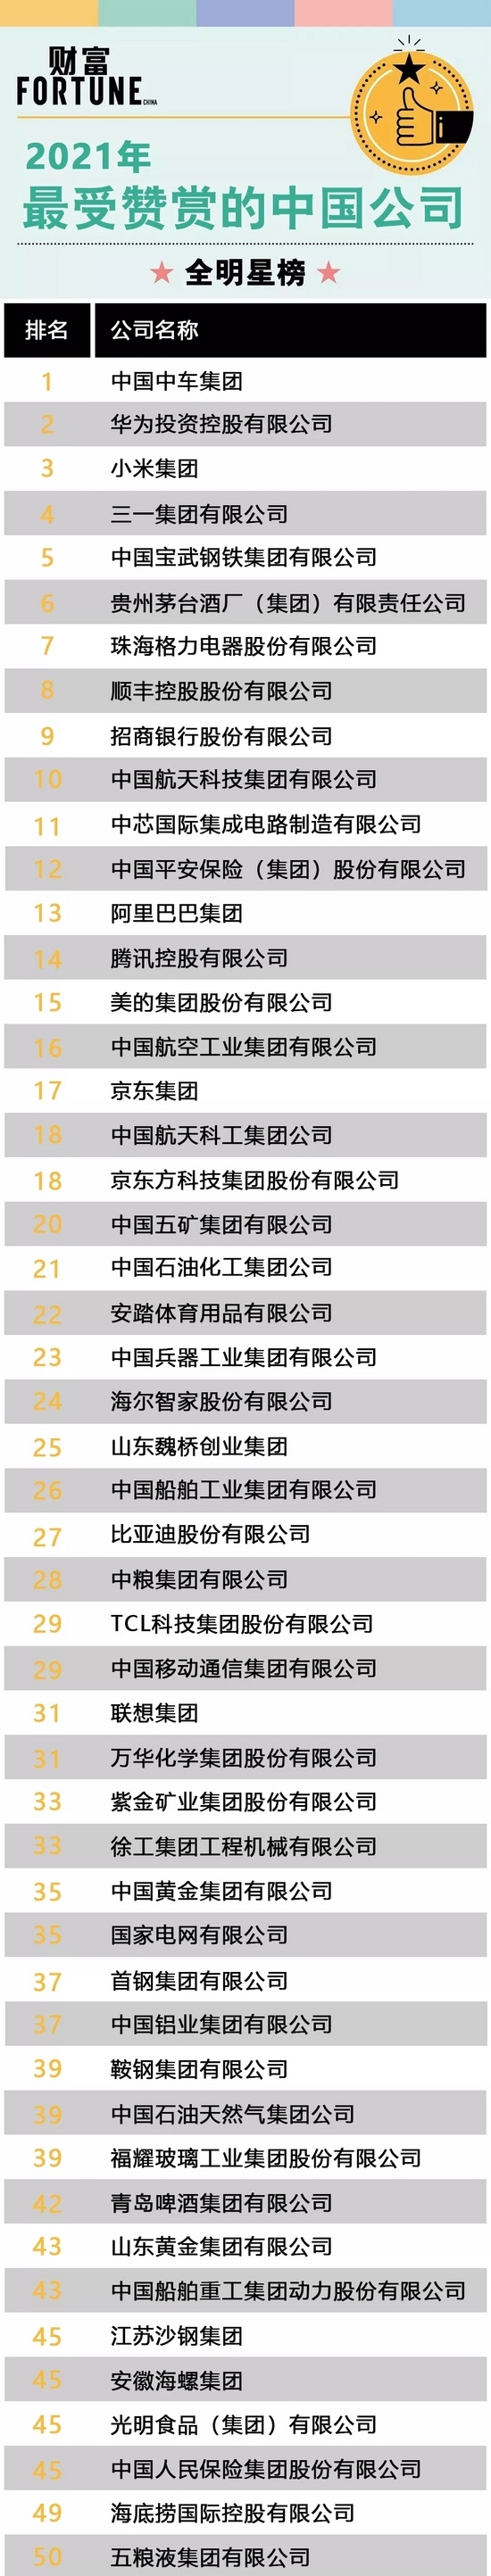 三一集團位列2021《財富》“最受歡迎中國公司”榜單第四名